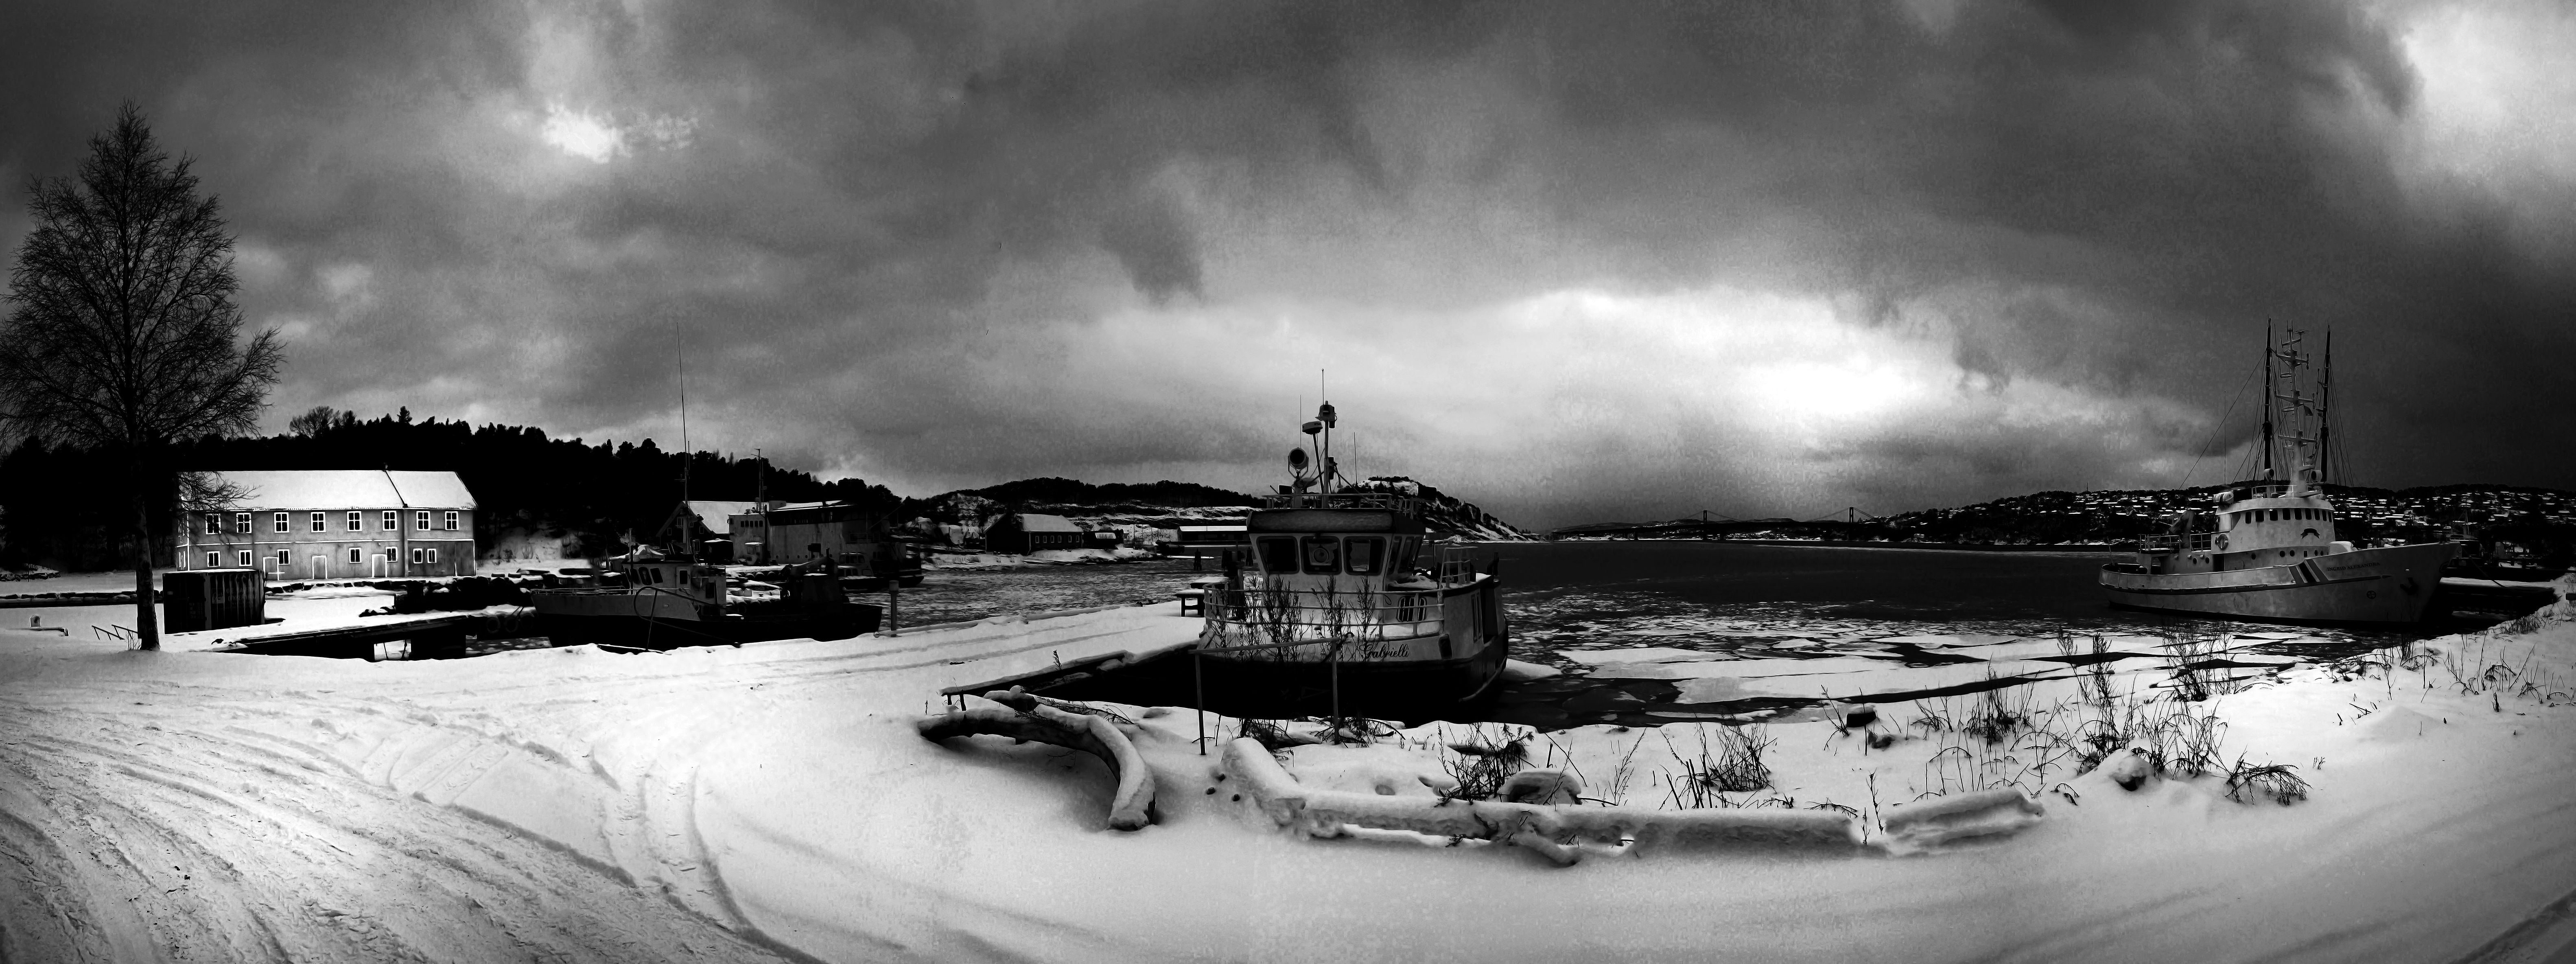 Panorama, marvika orlogsstasjon photo